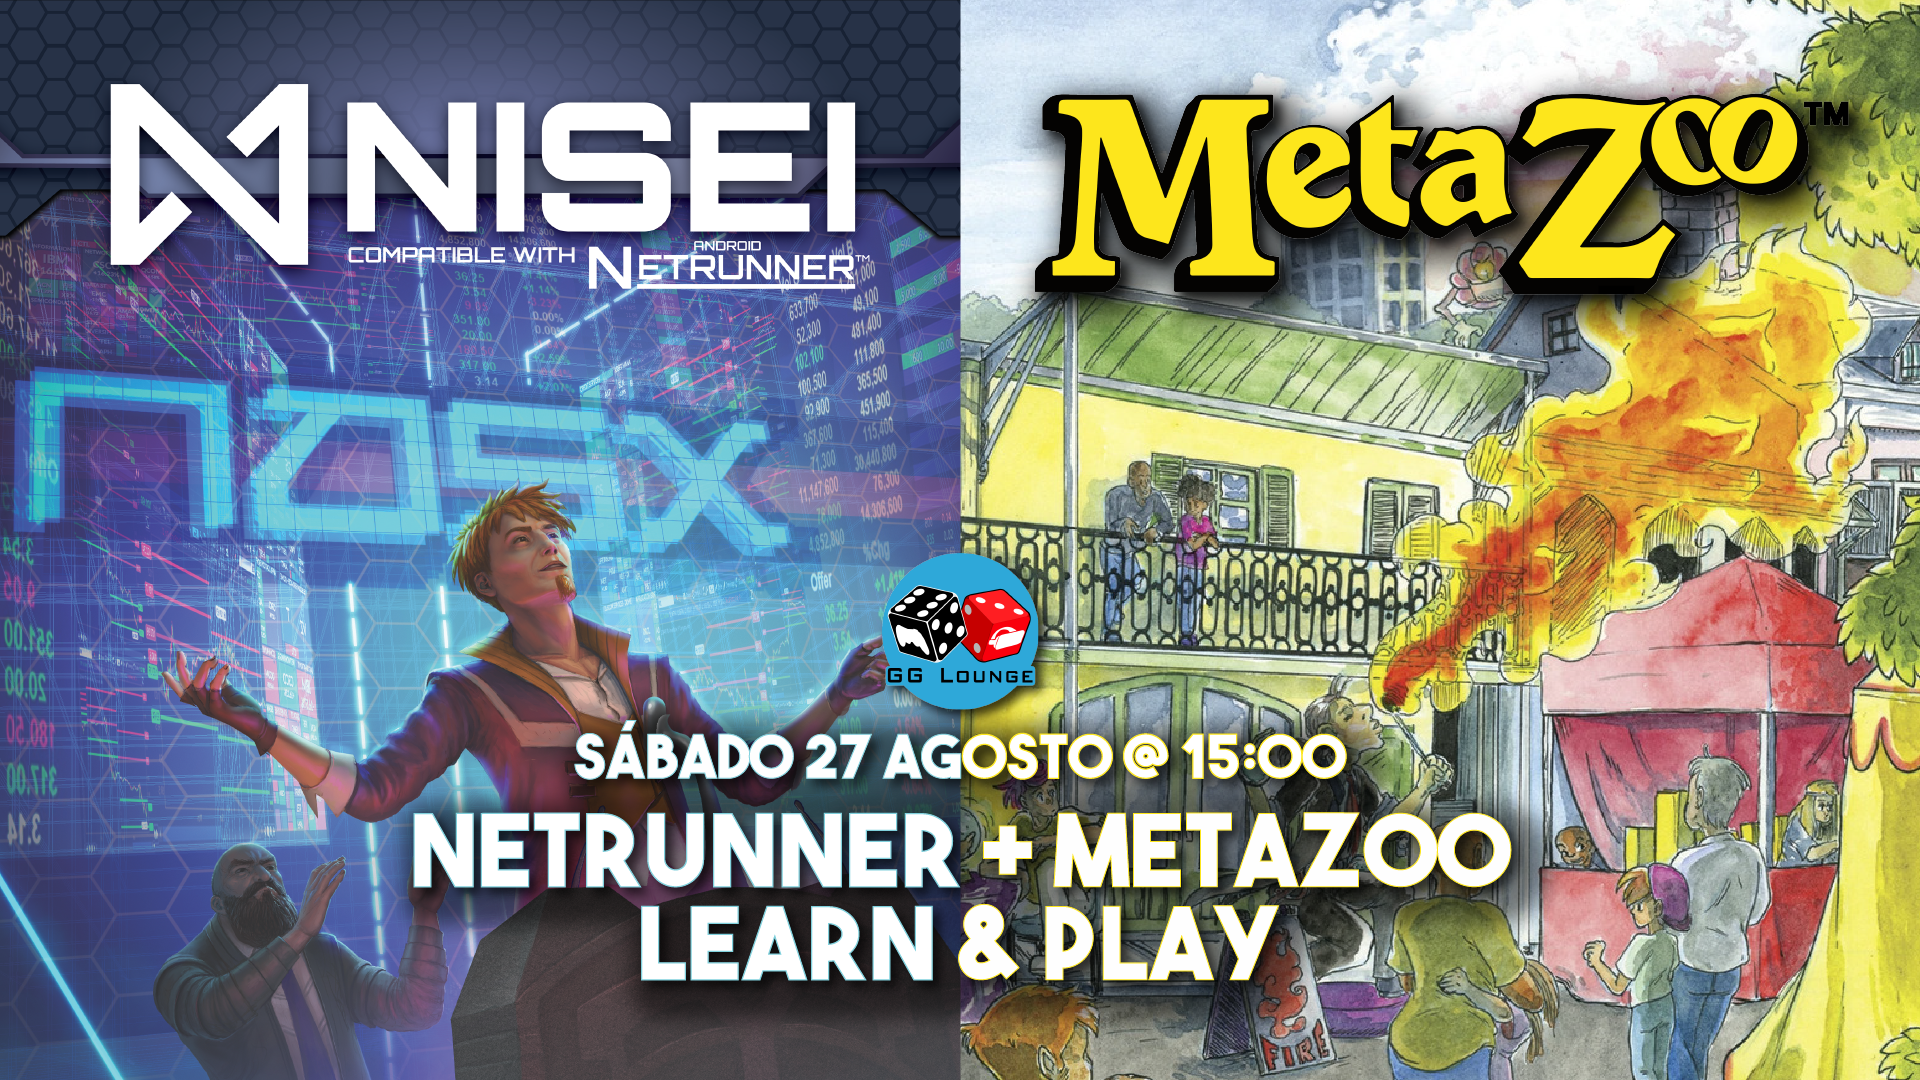 netrunner + metazoo-01